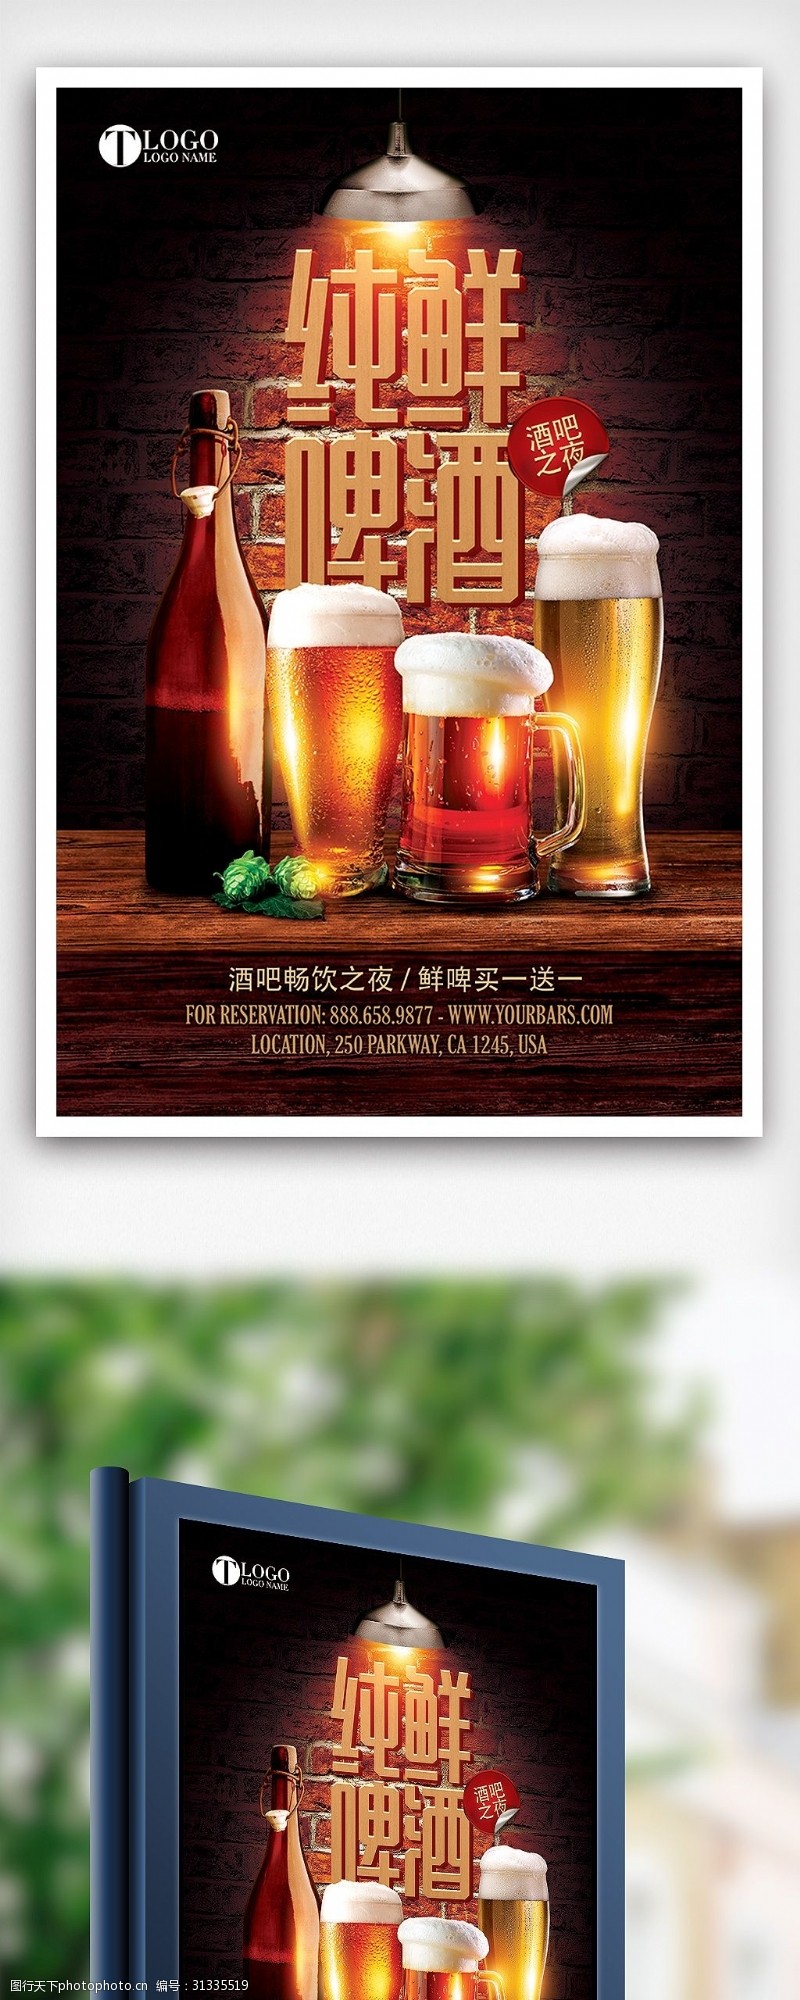 海鲜图片免费下载时尚大气纯鲜啤酒餐饮酒吧促销海报